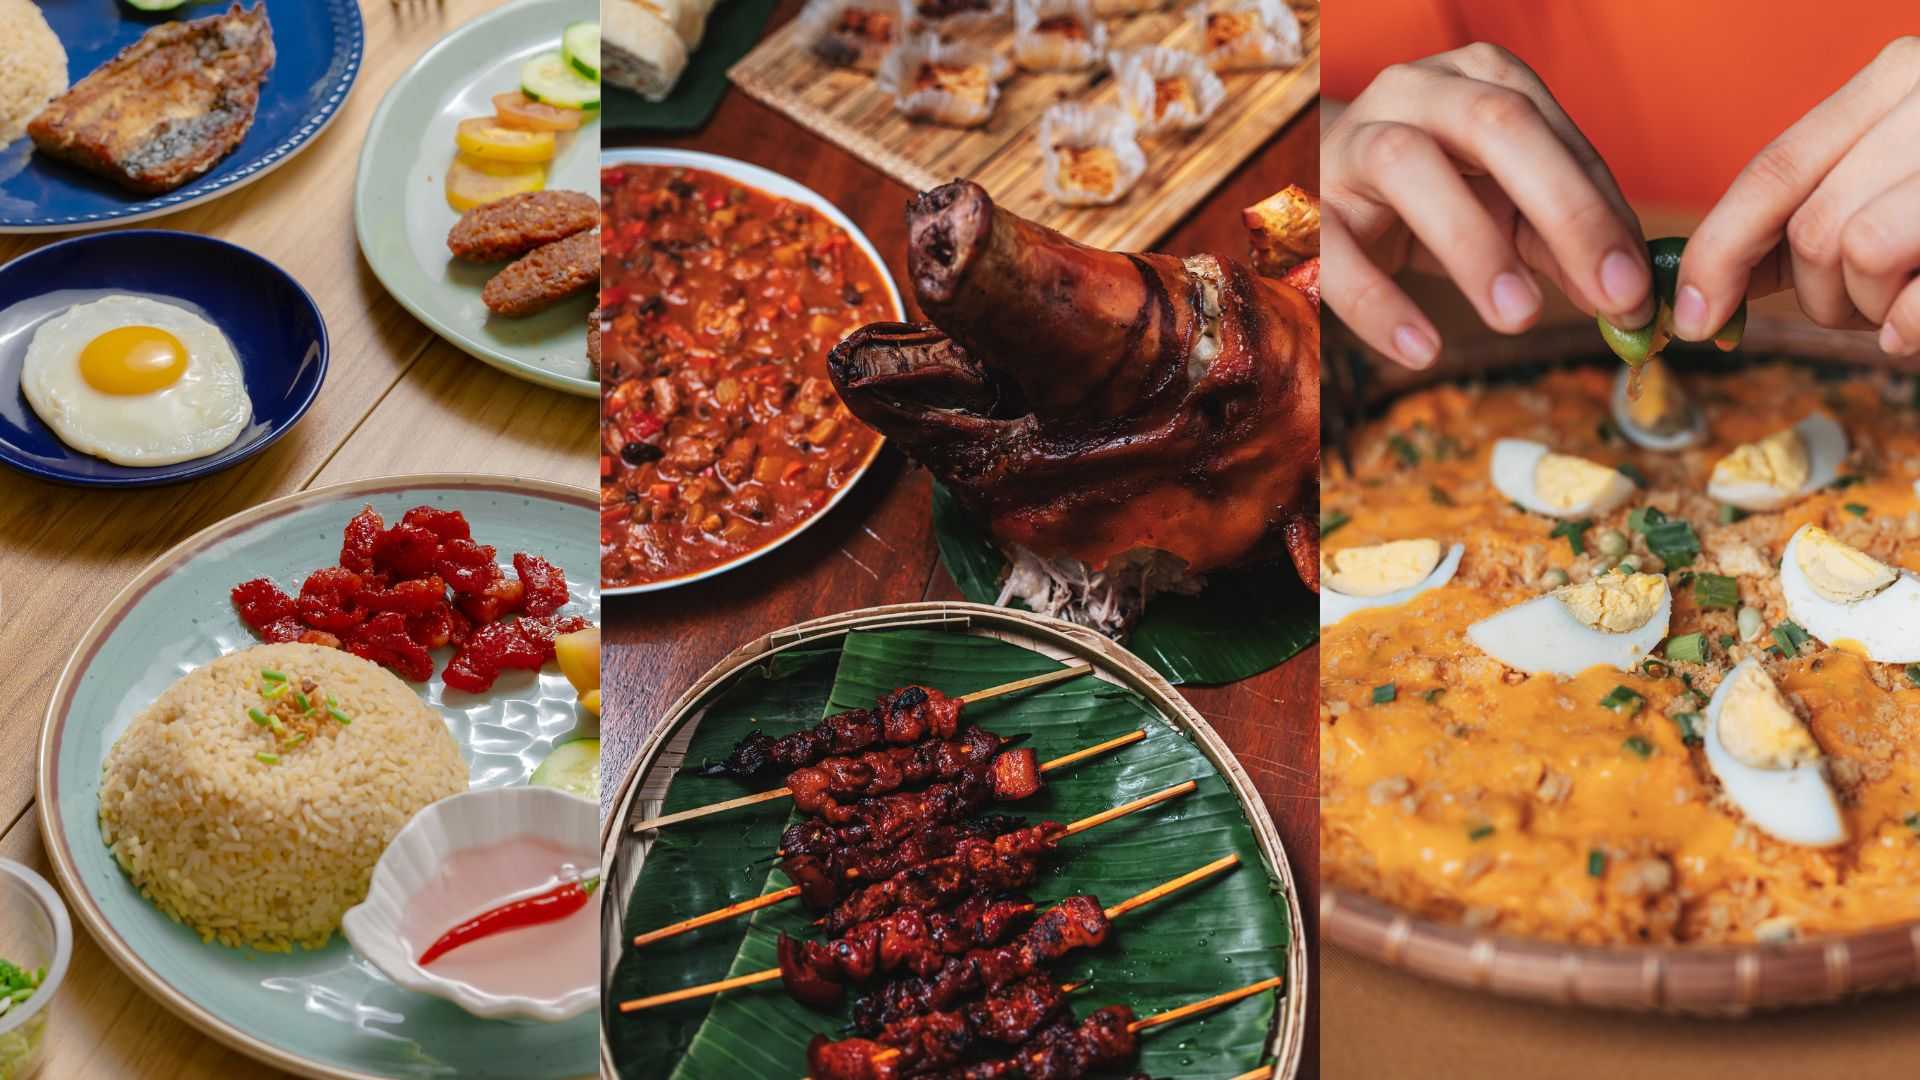 Filipino cuisine among best cuisines globally - Taste Atlas